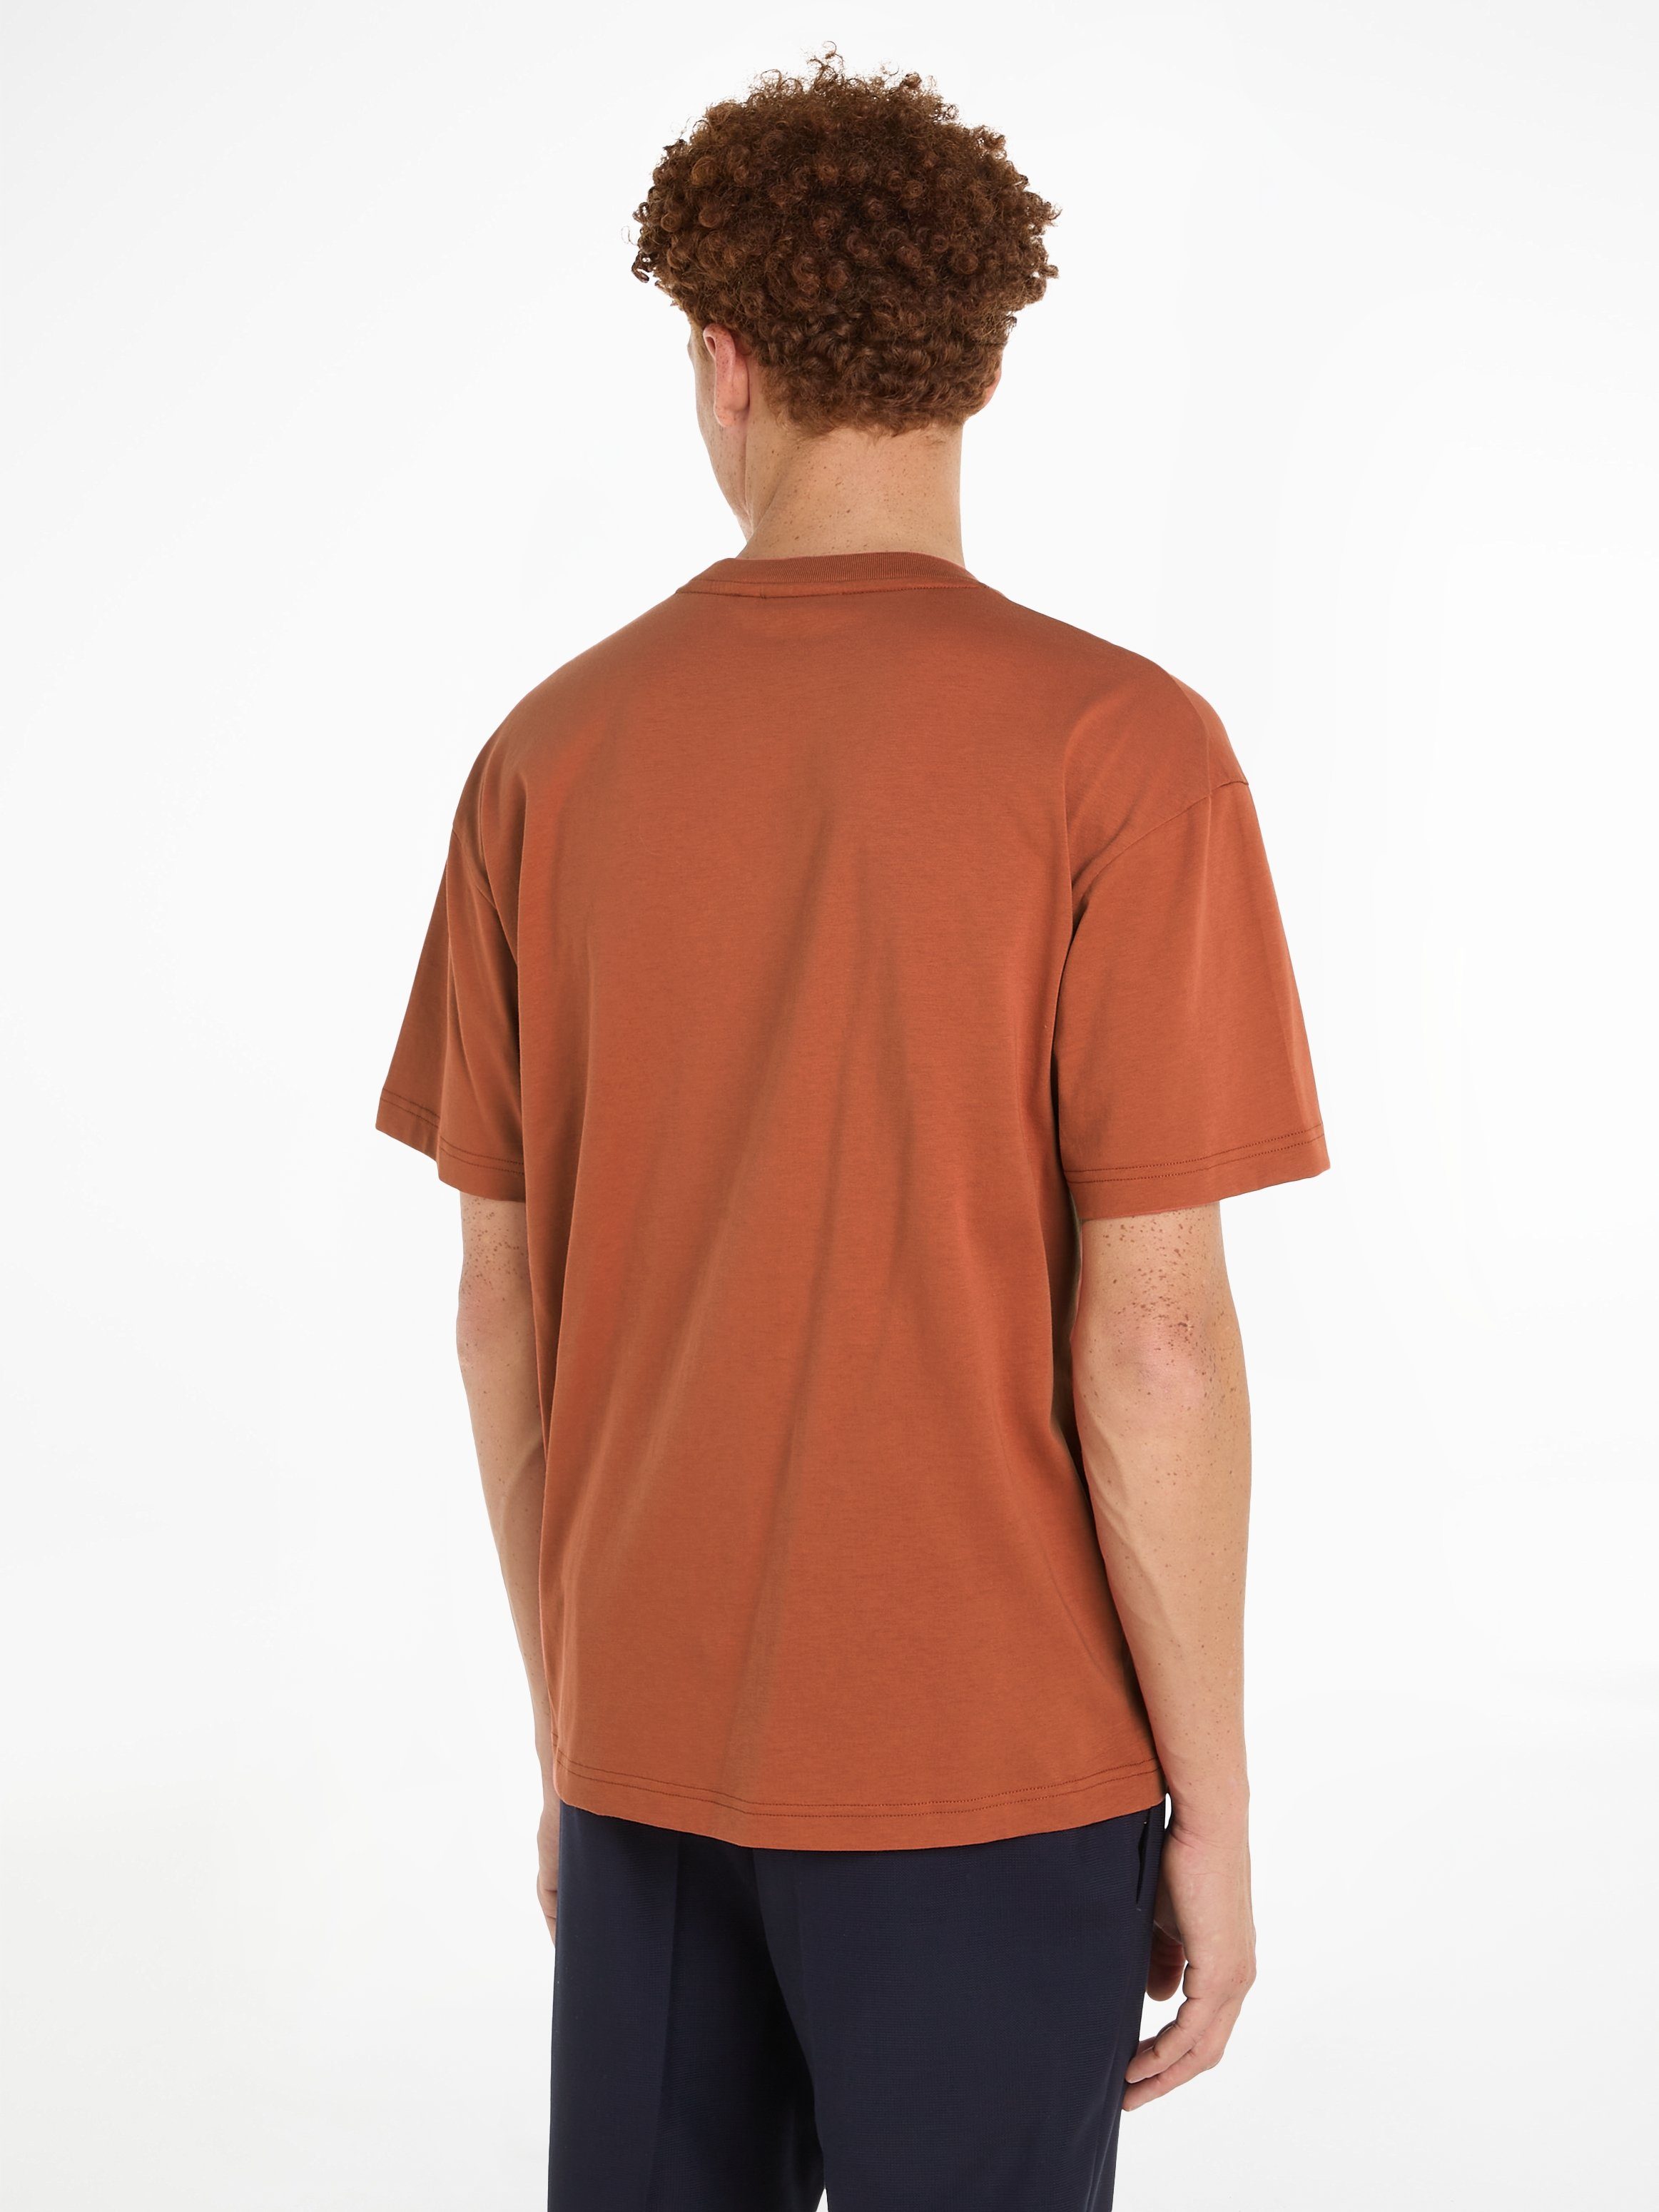 T-SHIRT Calvin mit Sun T-Shirt Klein HERO LOGO COMFORT aufgedrucktem Markenlabel Copper